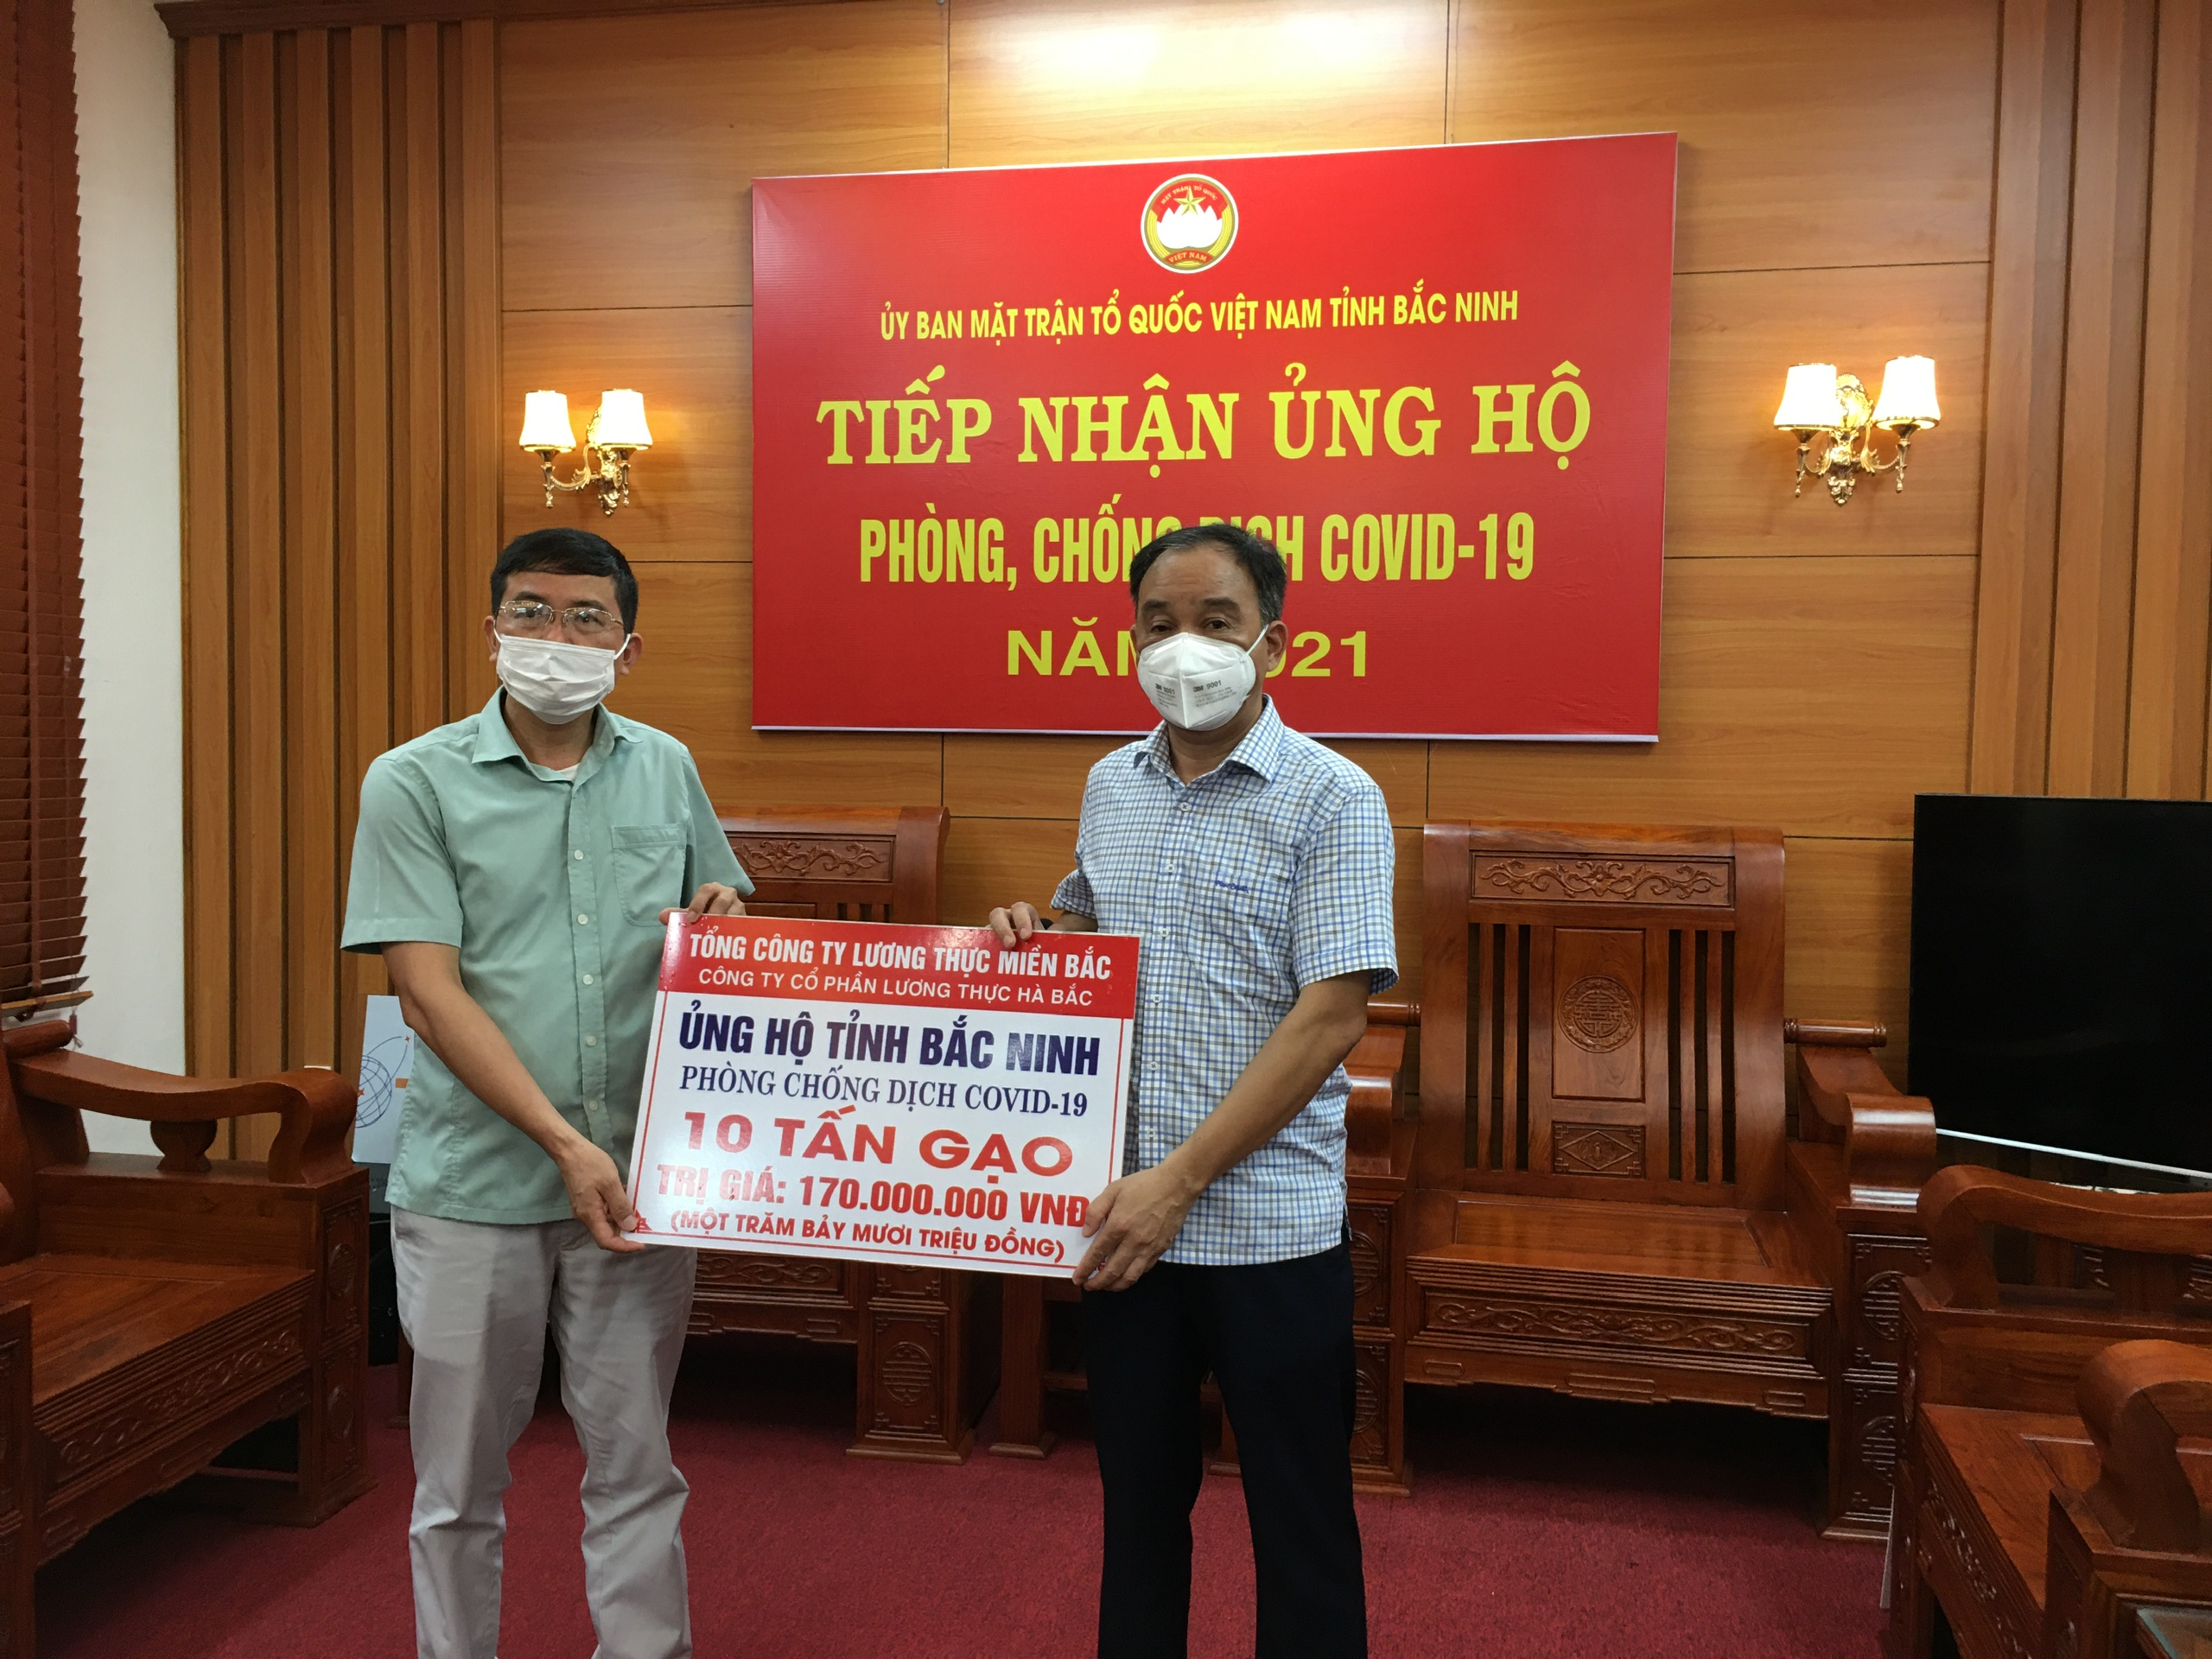 Đại diện lãnh đạo tỉnh Bắc Ninh  nhận hỗ trợ10 tấn gạo của Tổng công ty Lương thực Miền Bắc.